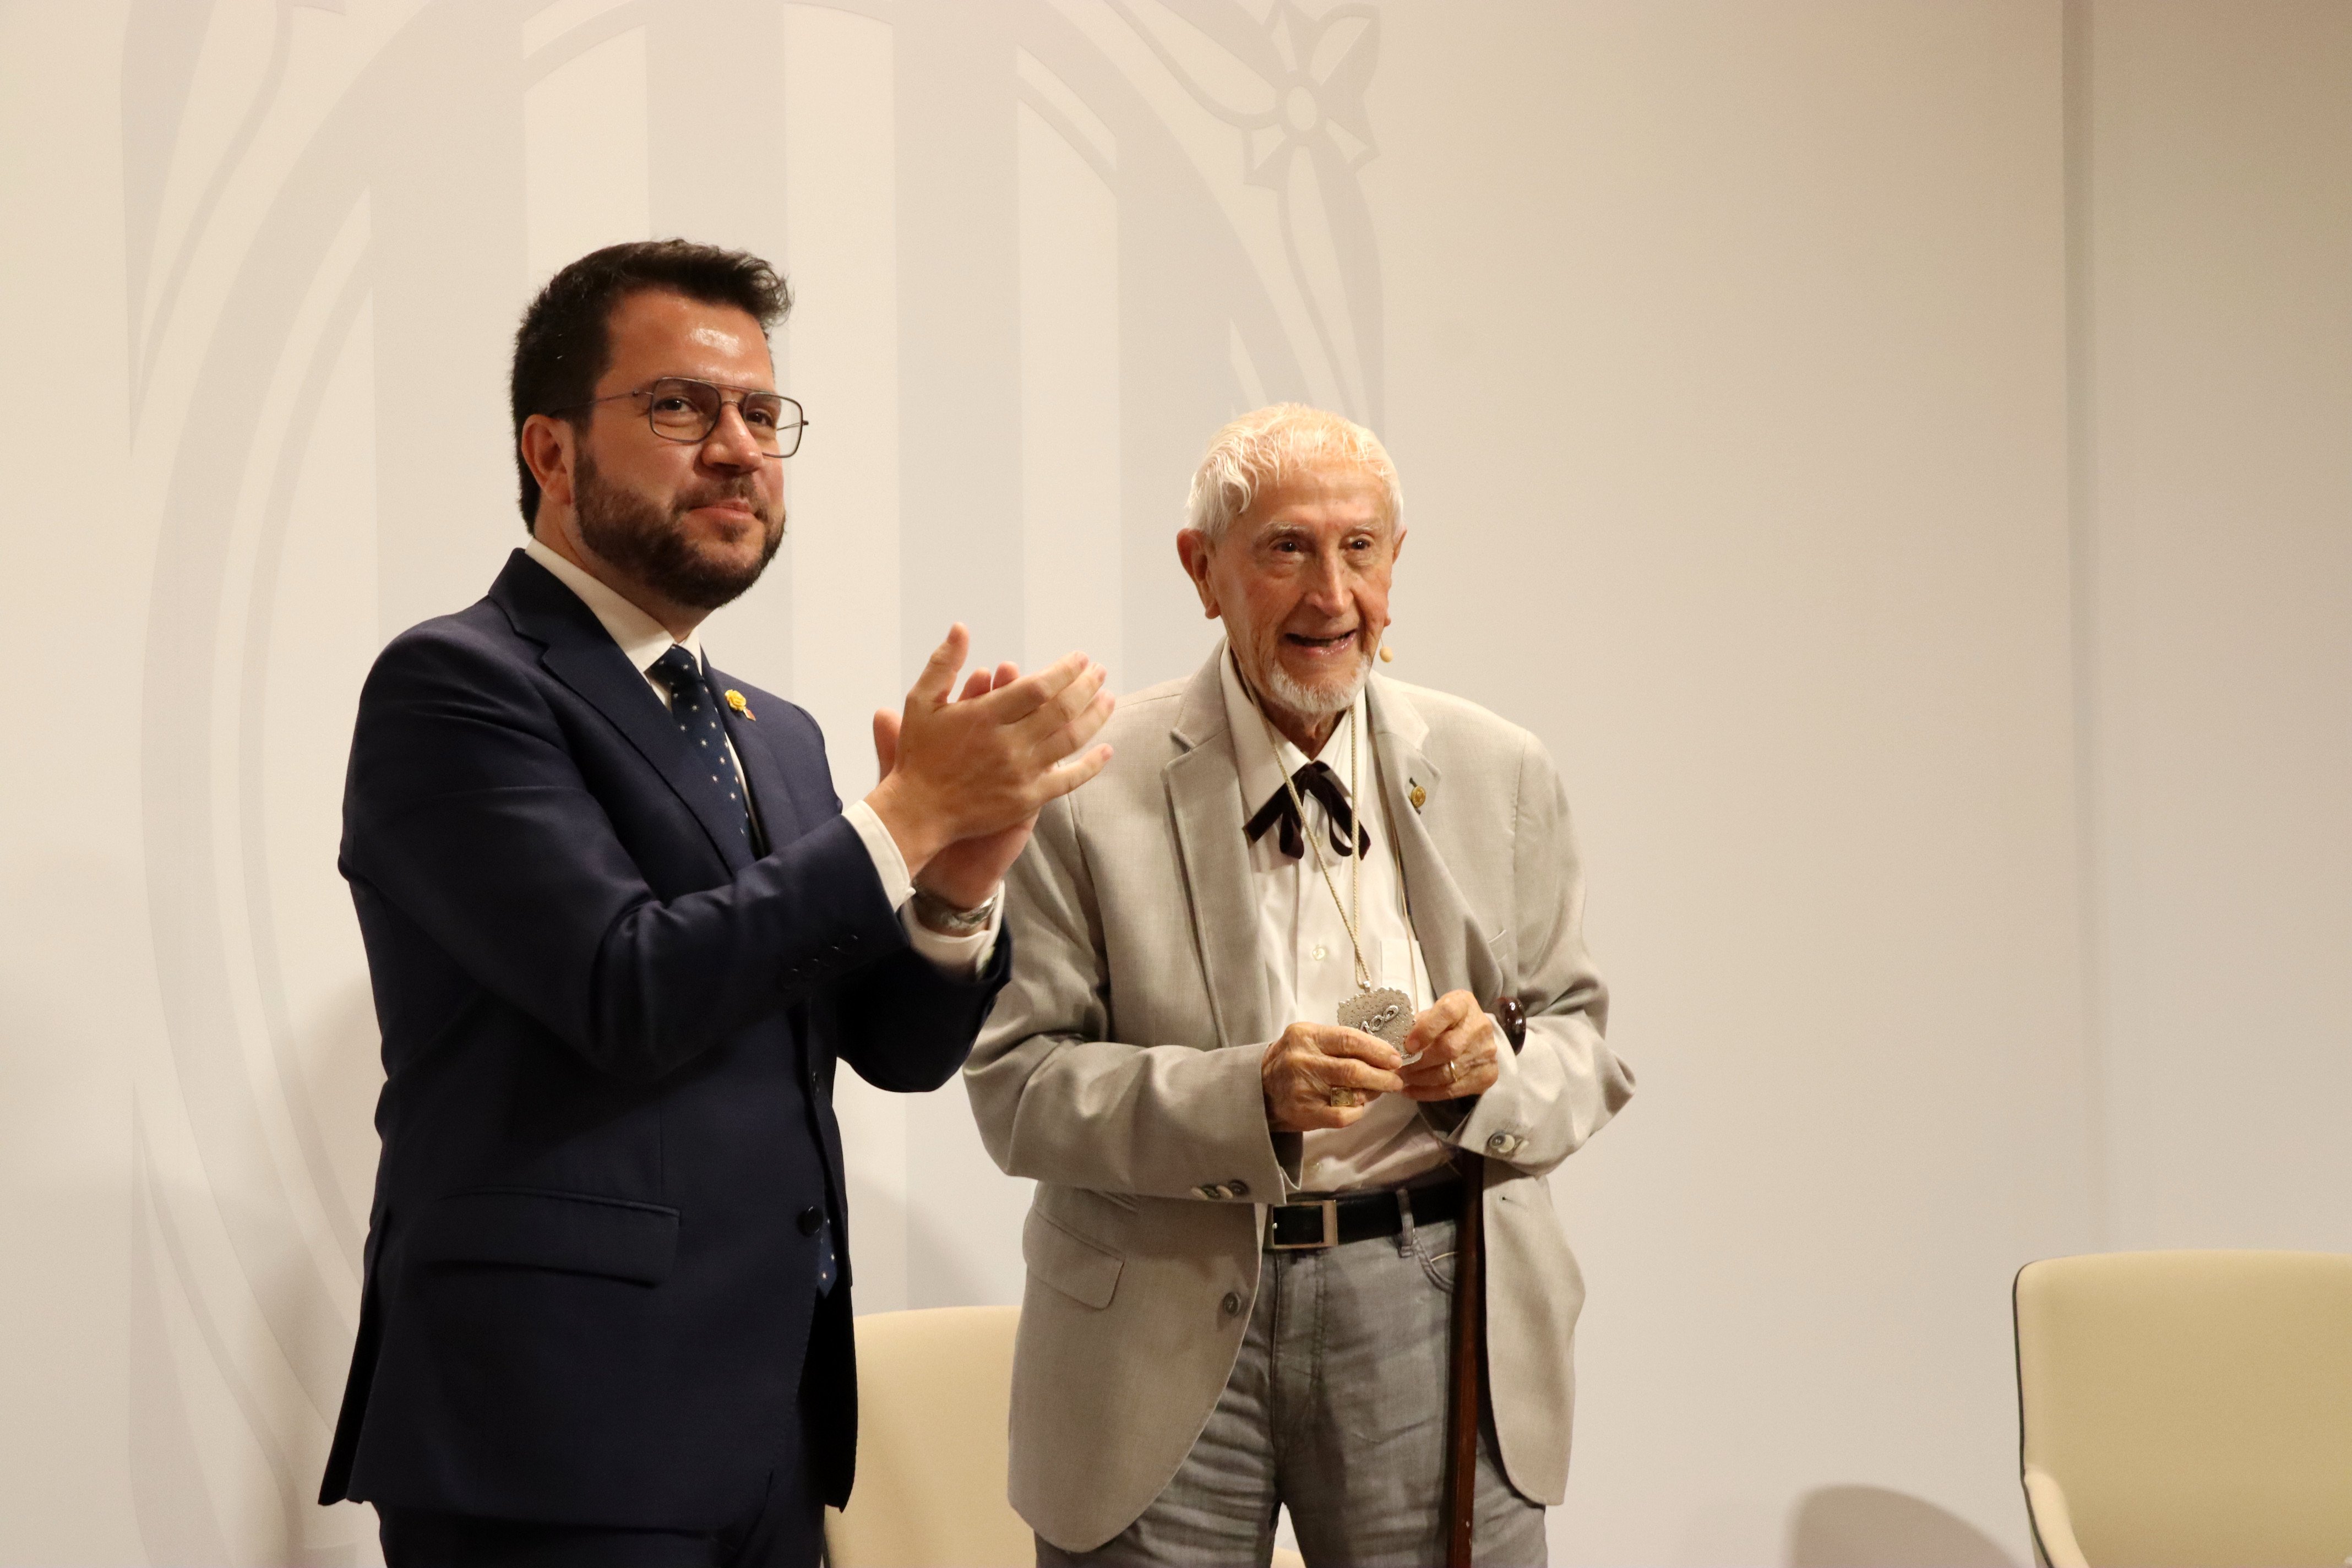 Josep Vallverdú, medalla centenària de la Generalitat: "La llengua retrocedeix perquè no s'empra prou"